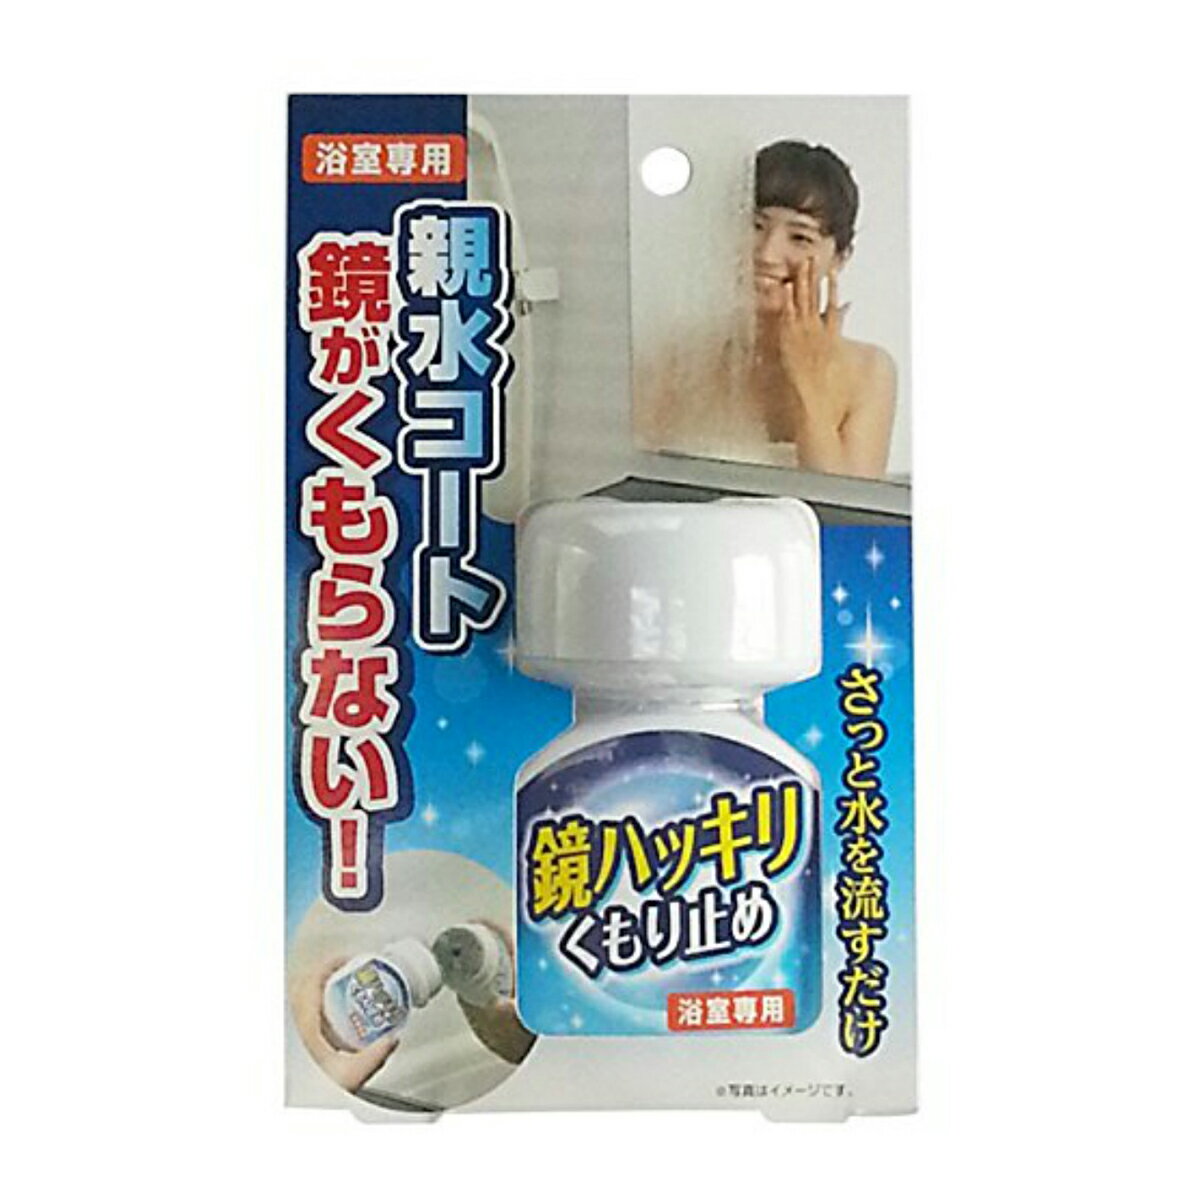 木村石鹸工業 鏡ハッキリくもり止め 化粧箱仕様 70ml